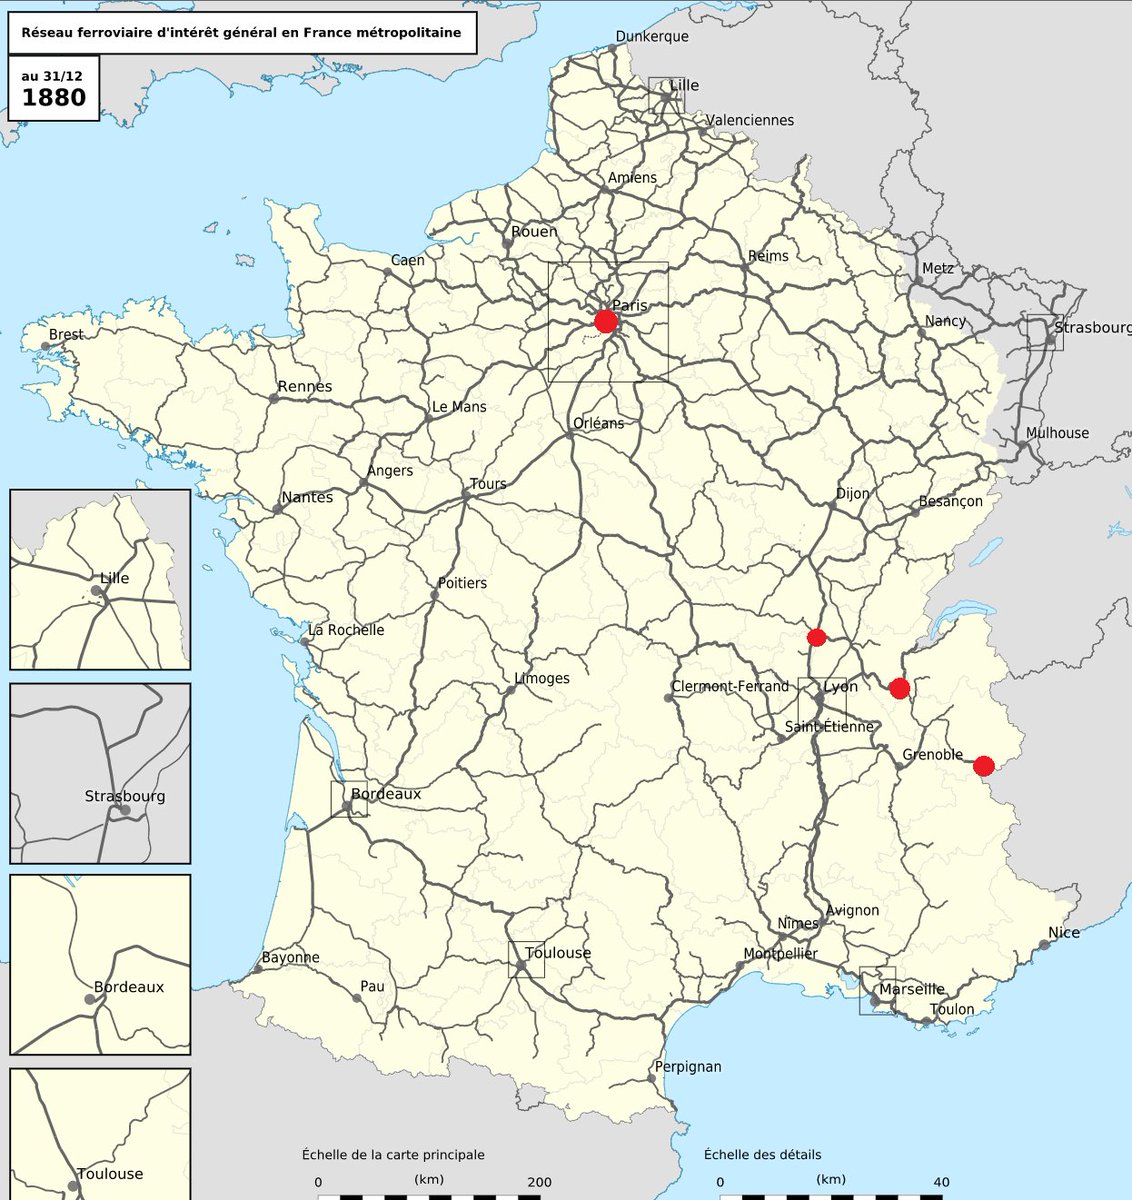 「ルキーニがパリからイタリア国境まで乗った鉄道の経路。中間の赤丸二つは乗り換え地点」|西川秀和のイラスト